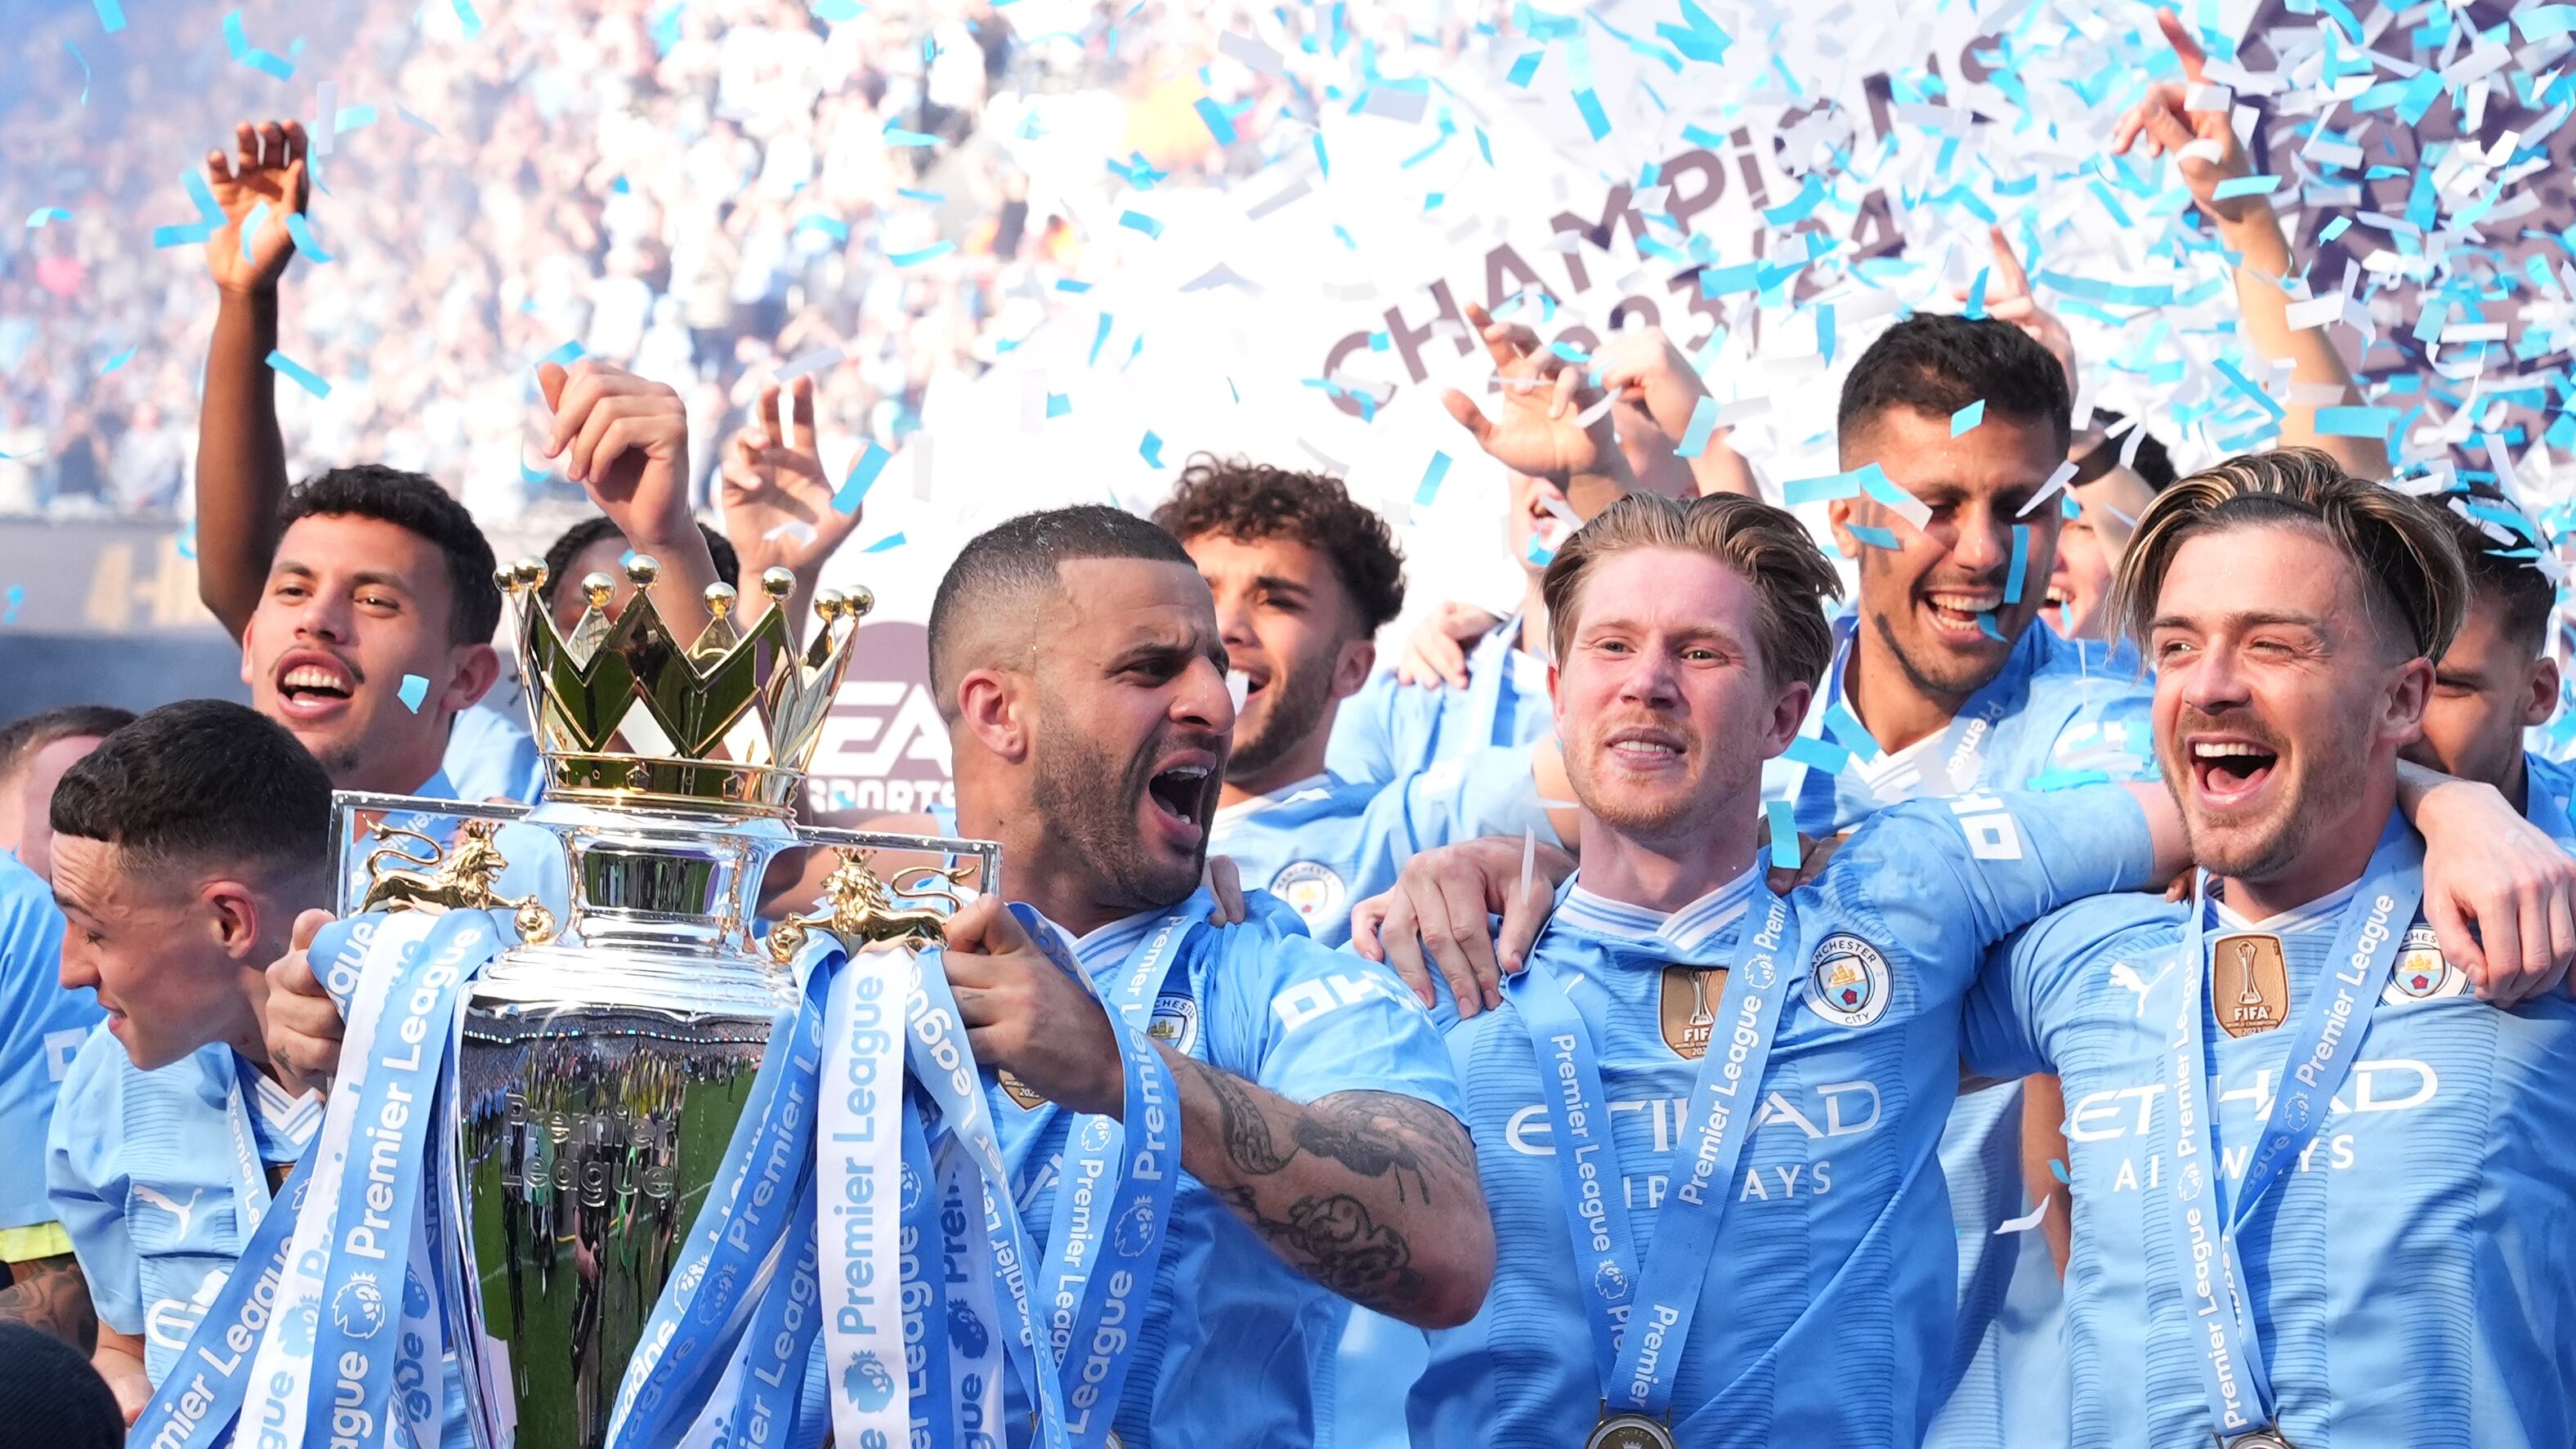 Manchester City’s Kyle Walker lifts the Premier League trophy